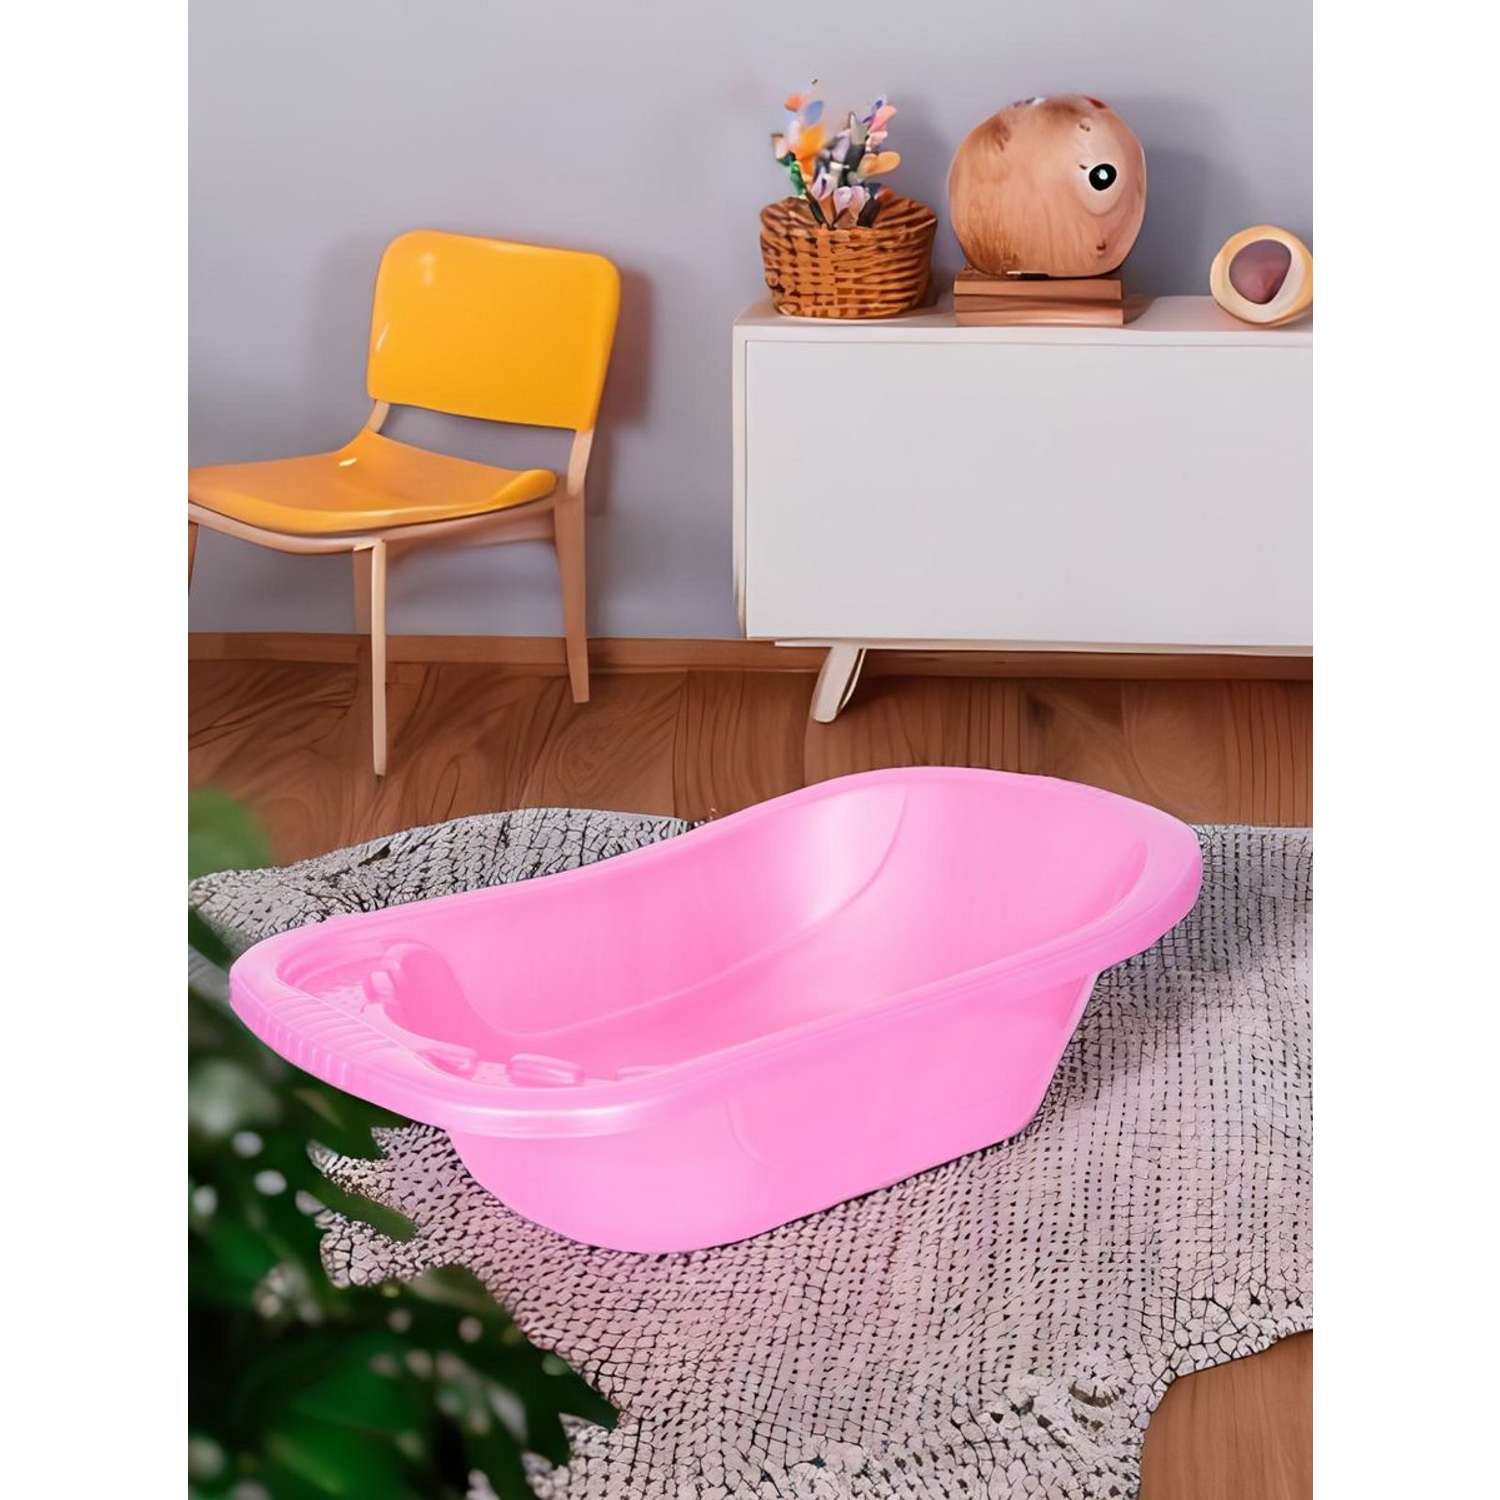 Ванночка для купания elfplast розовая со сливным клапаном - фото 1